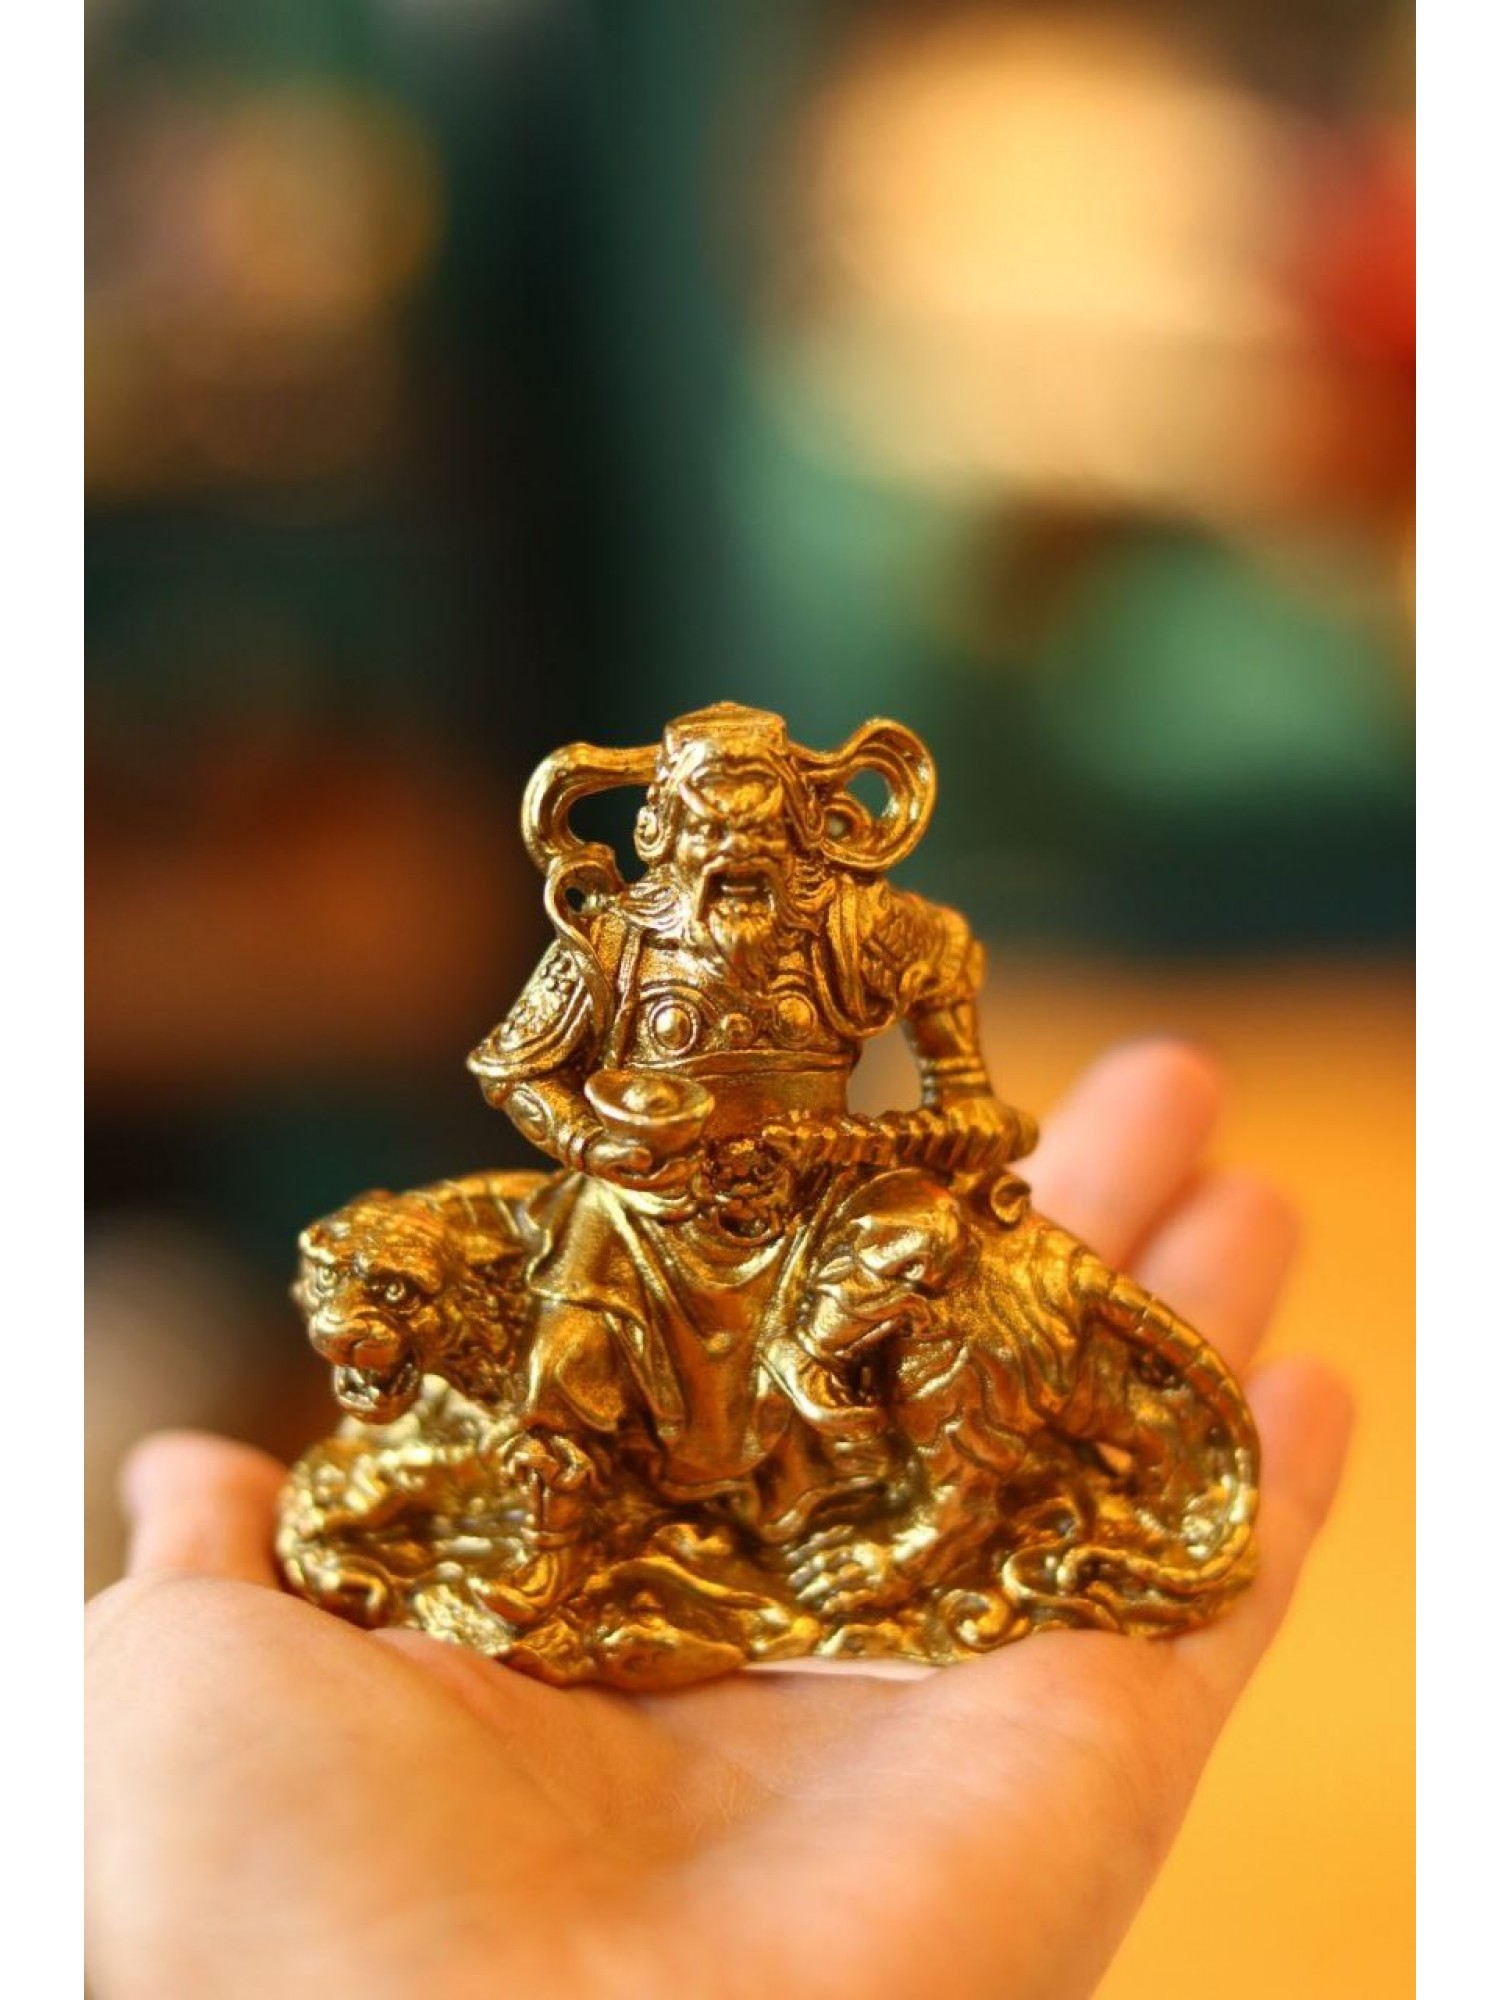 Статуэтка из бронзы "Цай-Шень на тигре (маленькая) - покровитель торговли и бизнеса!